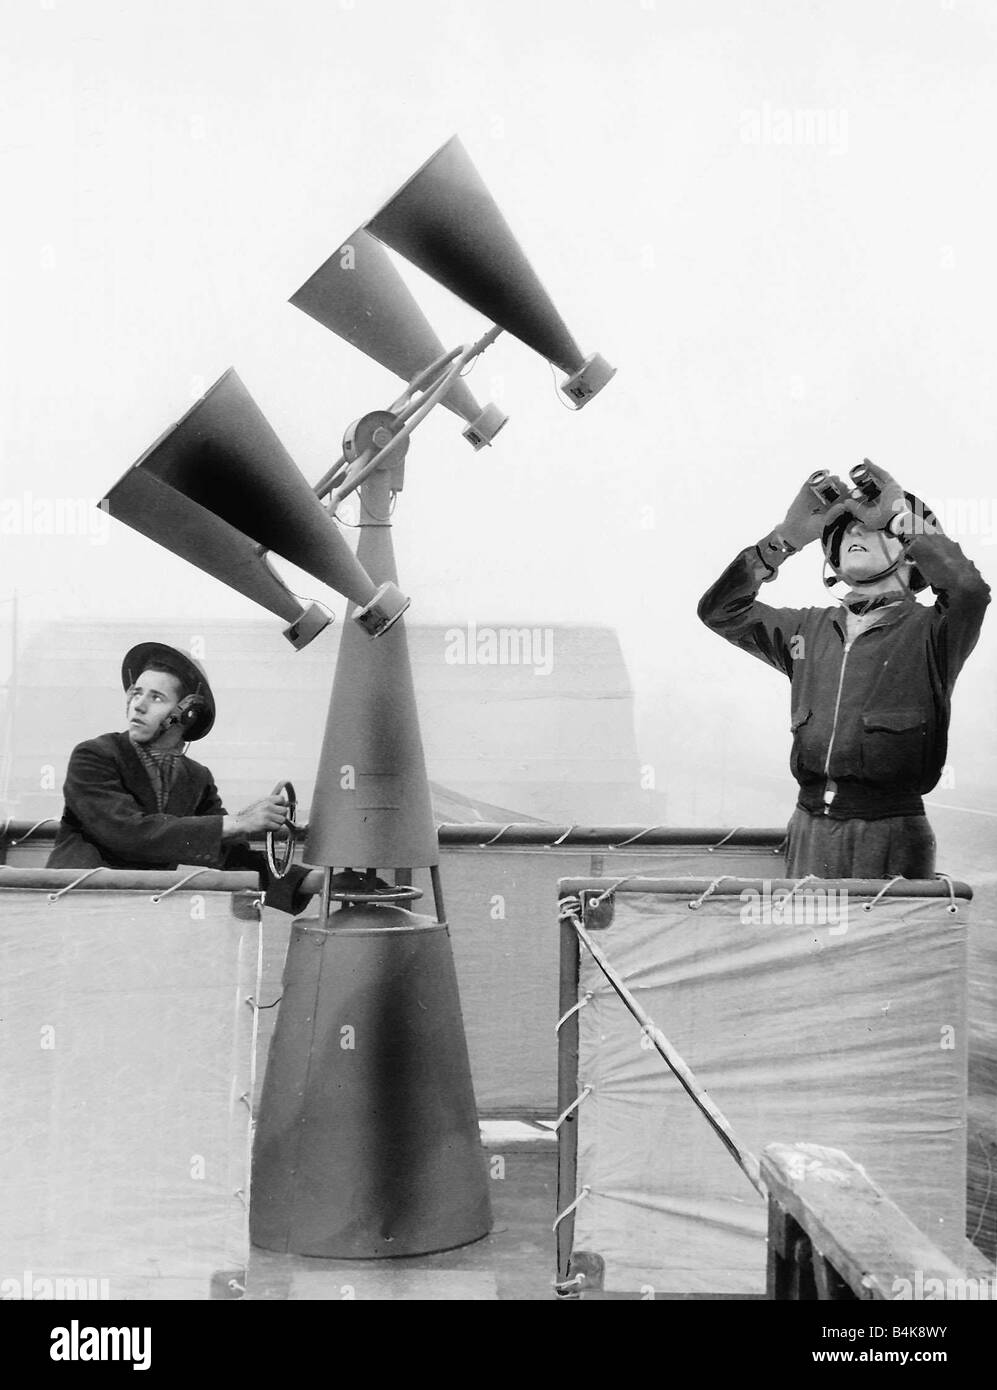 WW2 Beobachter auf der Dachterrasse mit Tondetektion Ausrüstung Stockfoto